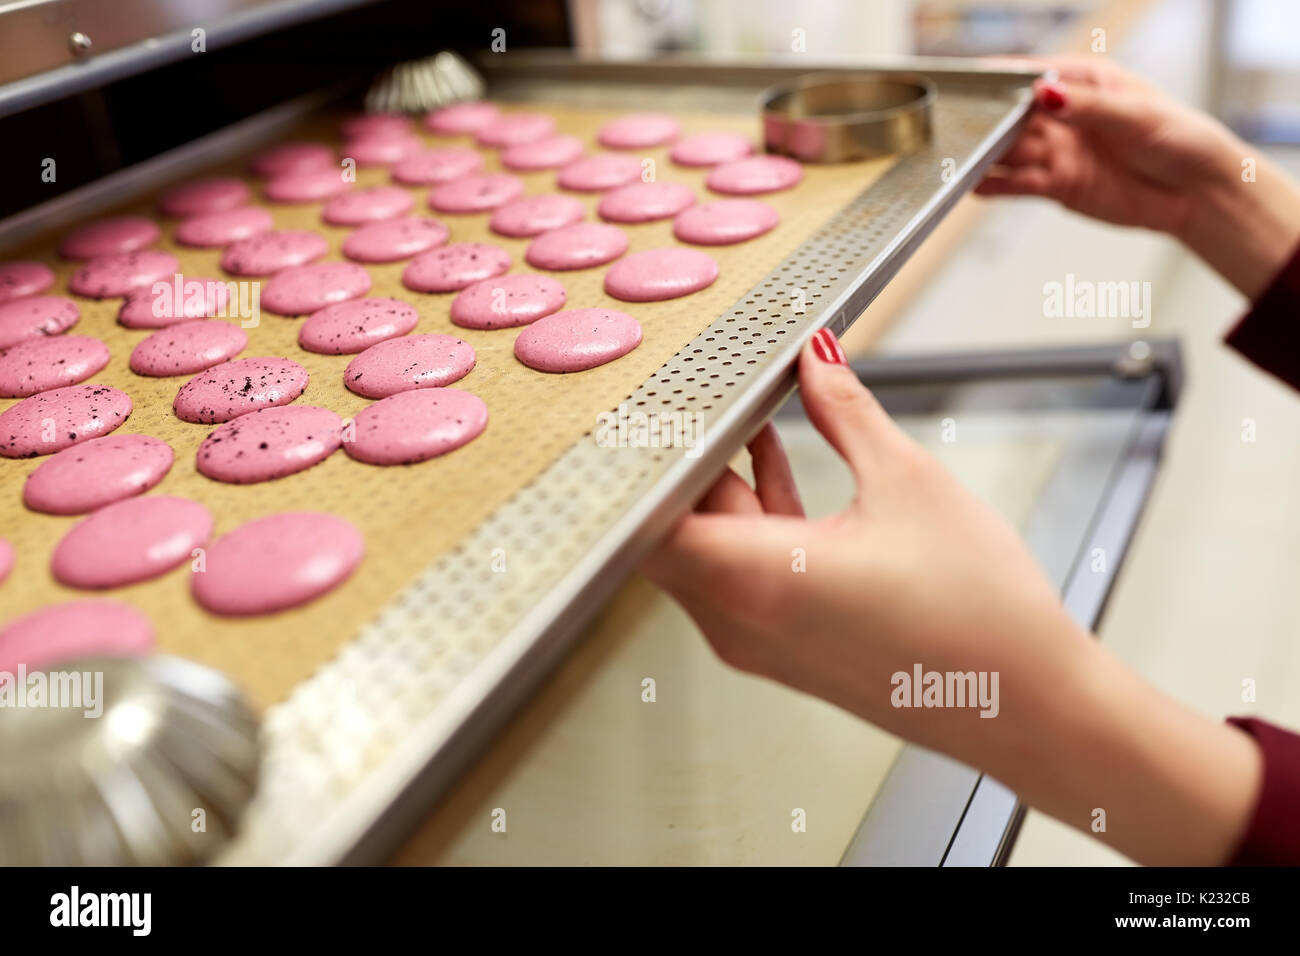 Koch mit Macarons auf ein Backblech bei Süßwaren Stockfotografie - Alamy